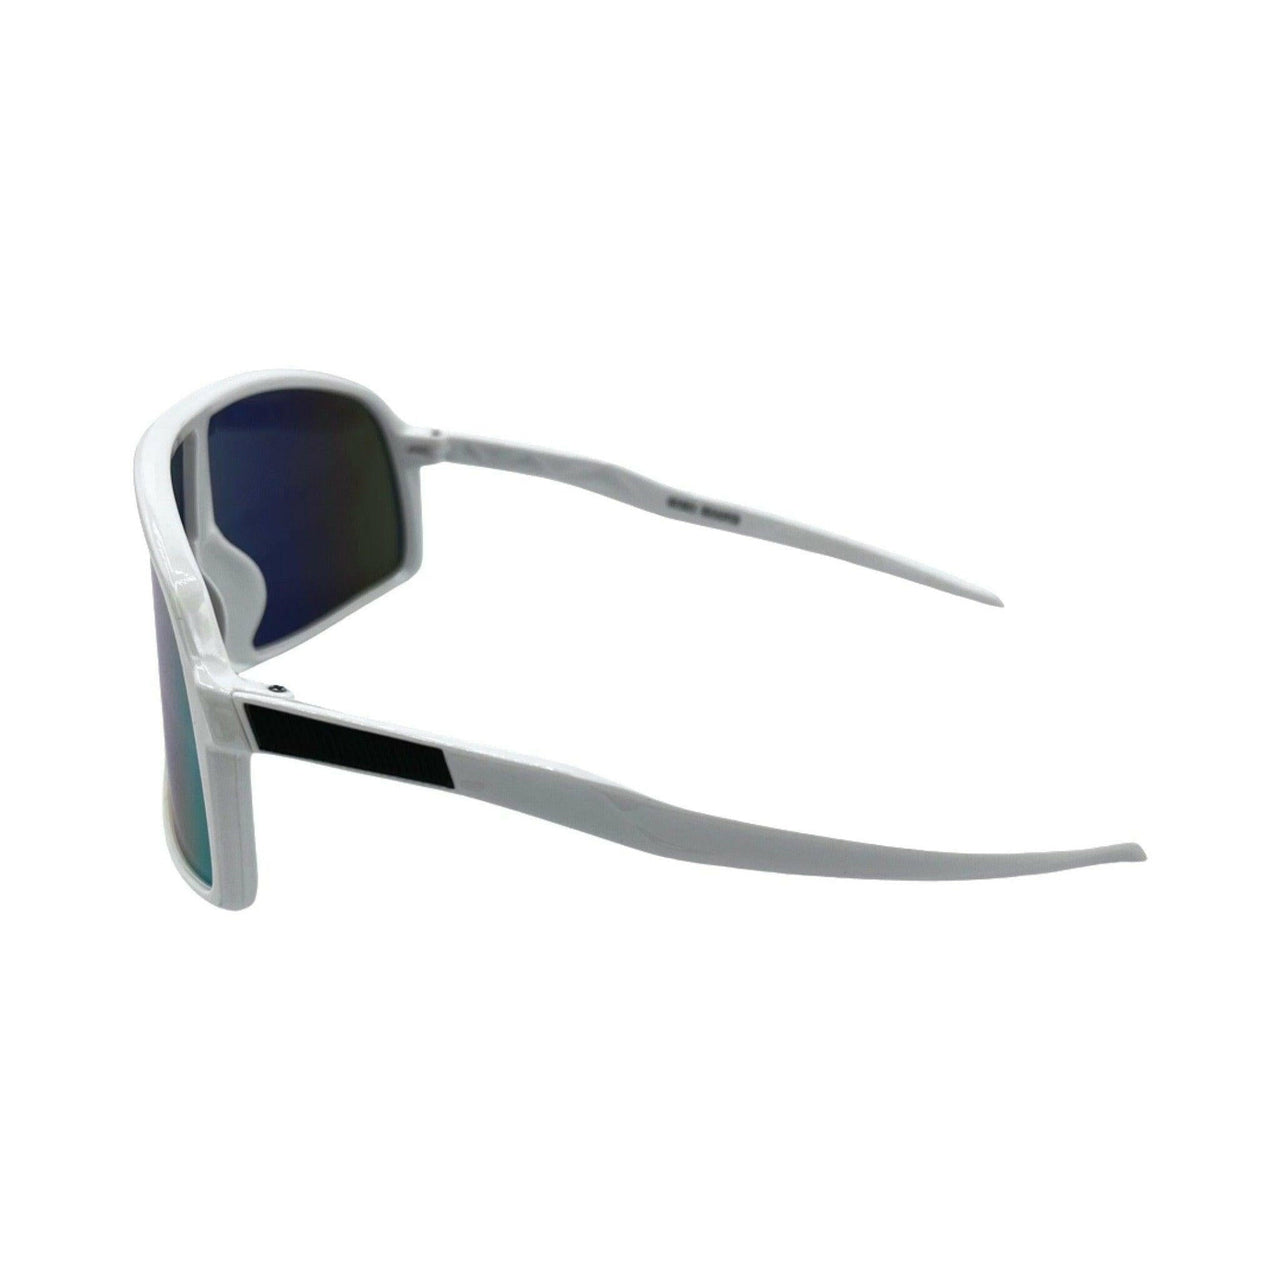 Yeti White & Pink Polarized Lens Sunglasses